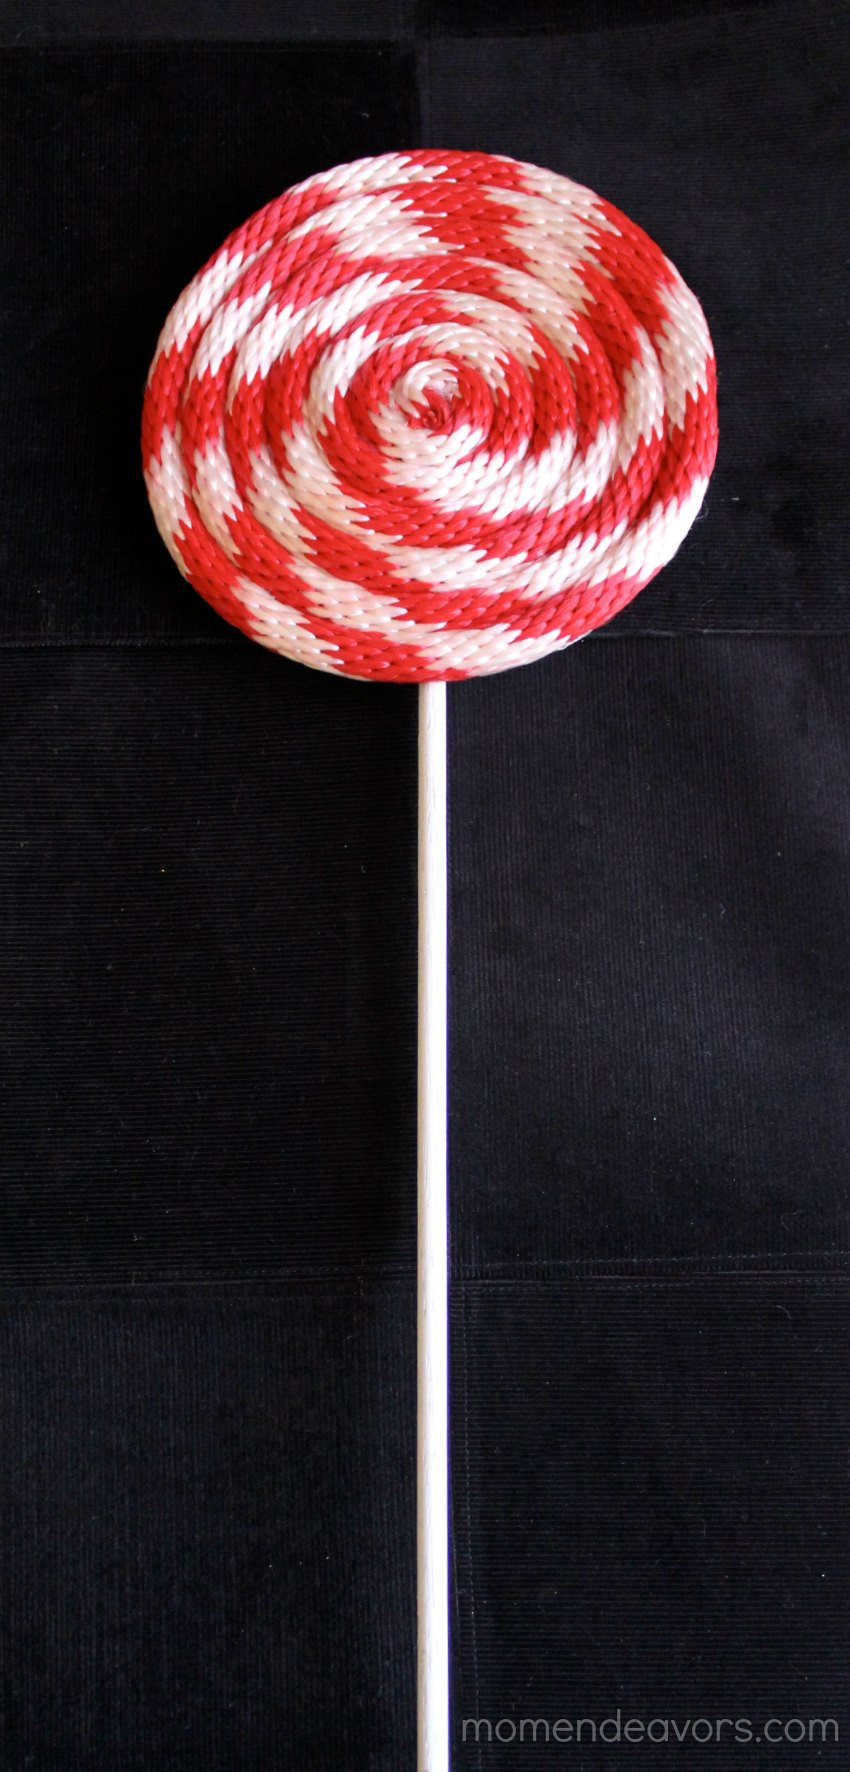 DIY Lollipop Decorations
 DIY Peppermint Lollipops Christmas Decor